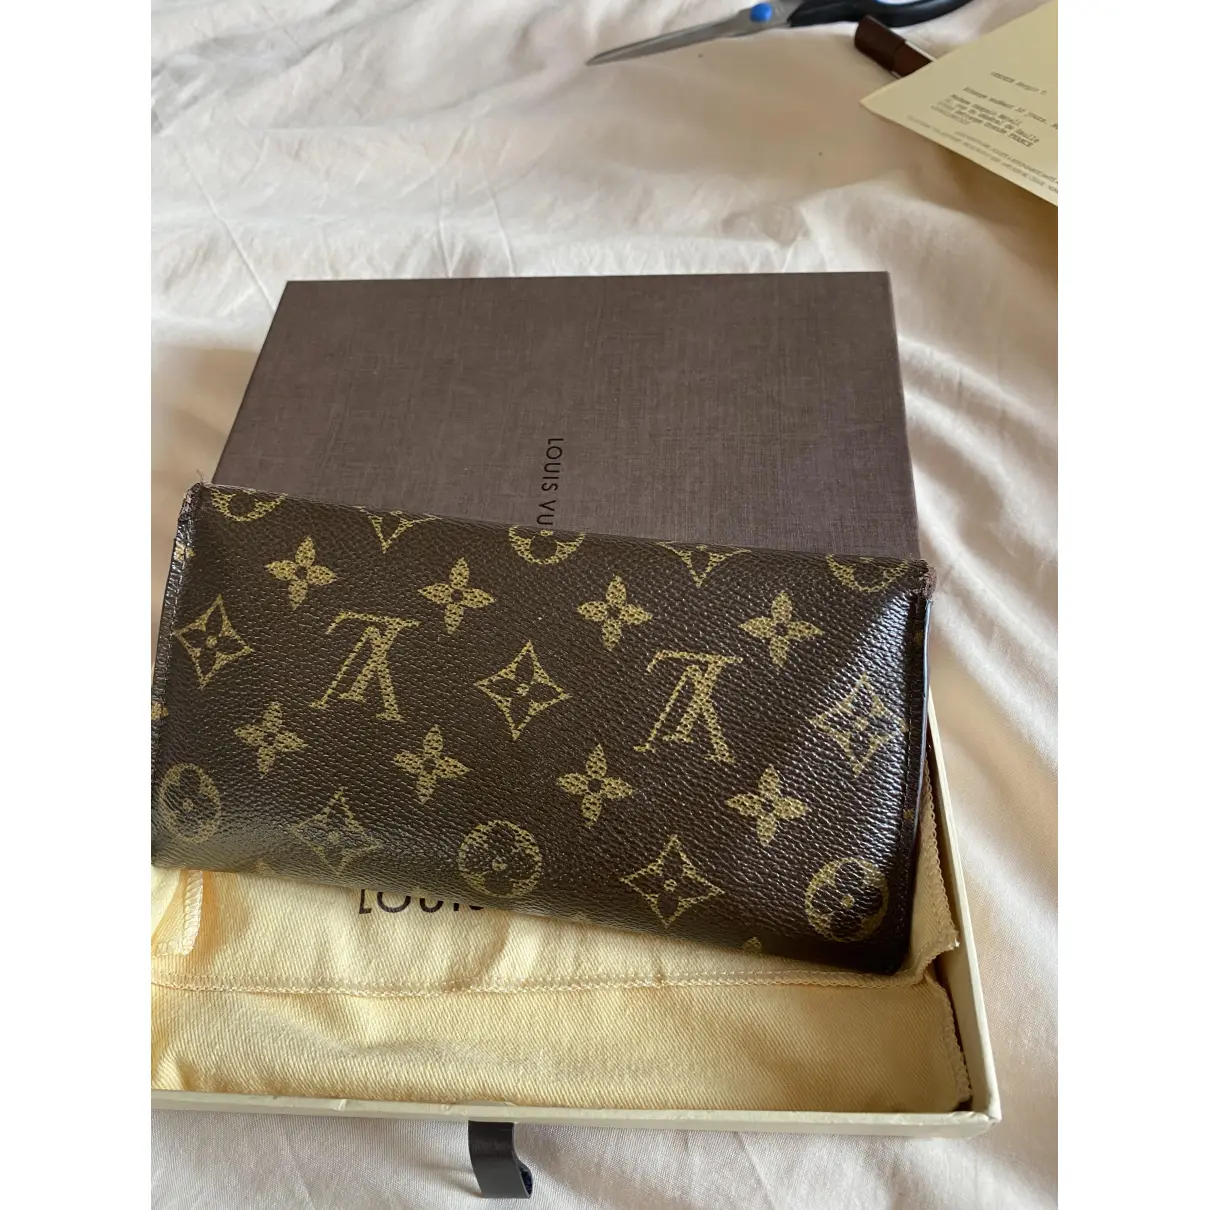 Buy Louis Vuitton Joséphine cloth wallet online